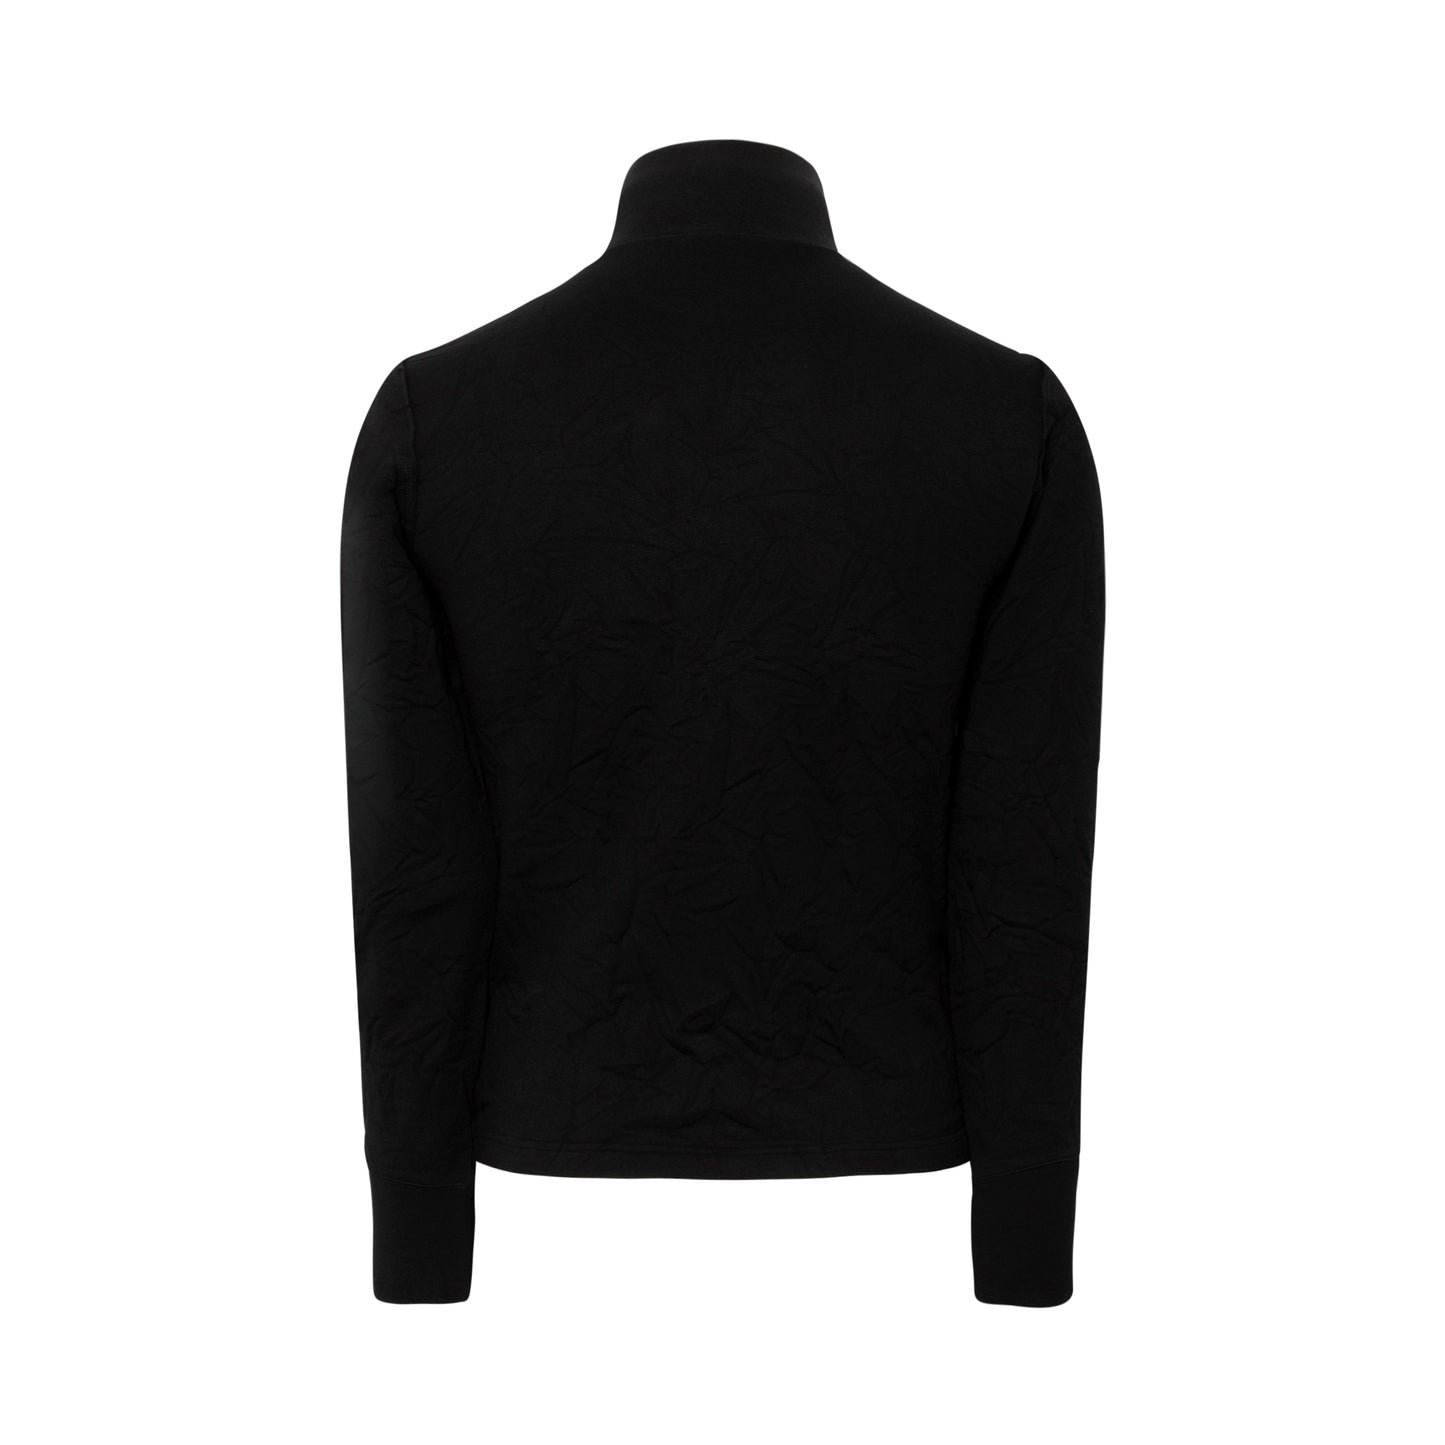 Wrinkled Turtleneck Sweater in Black